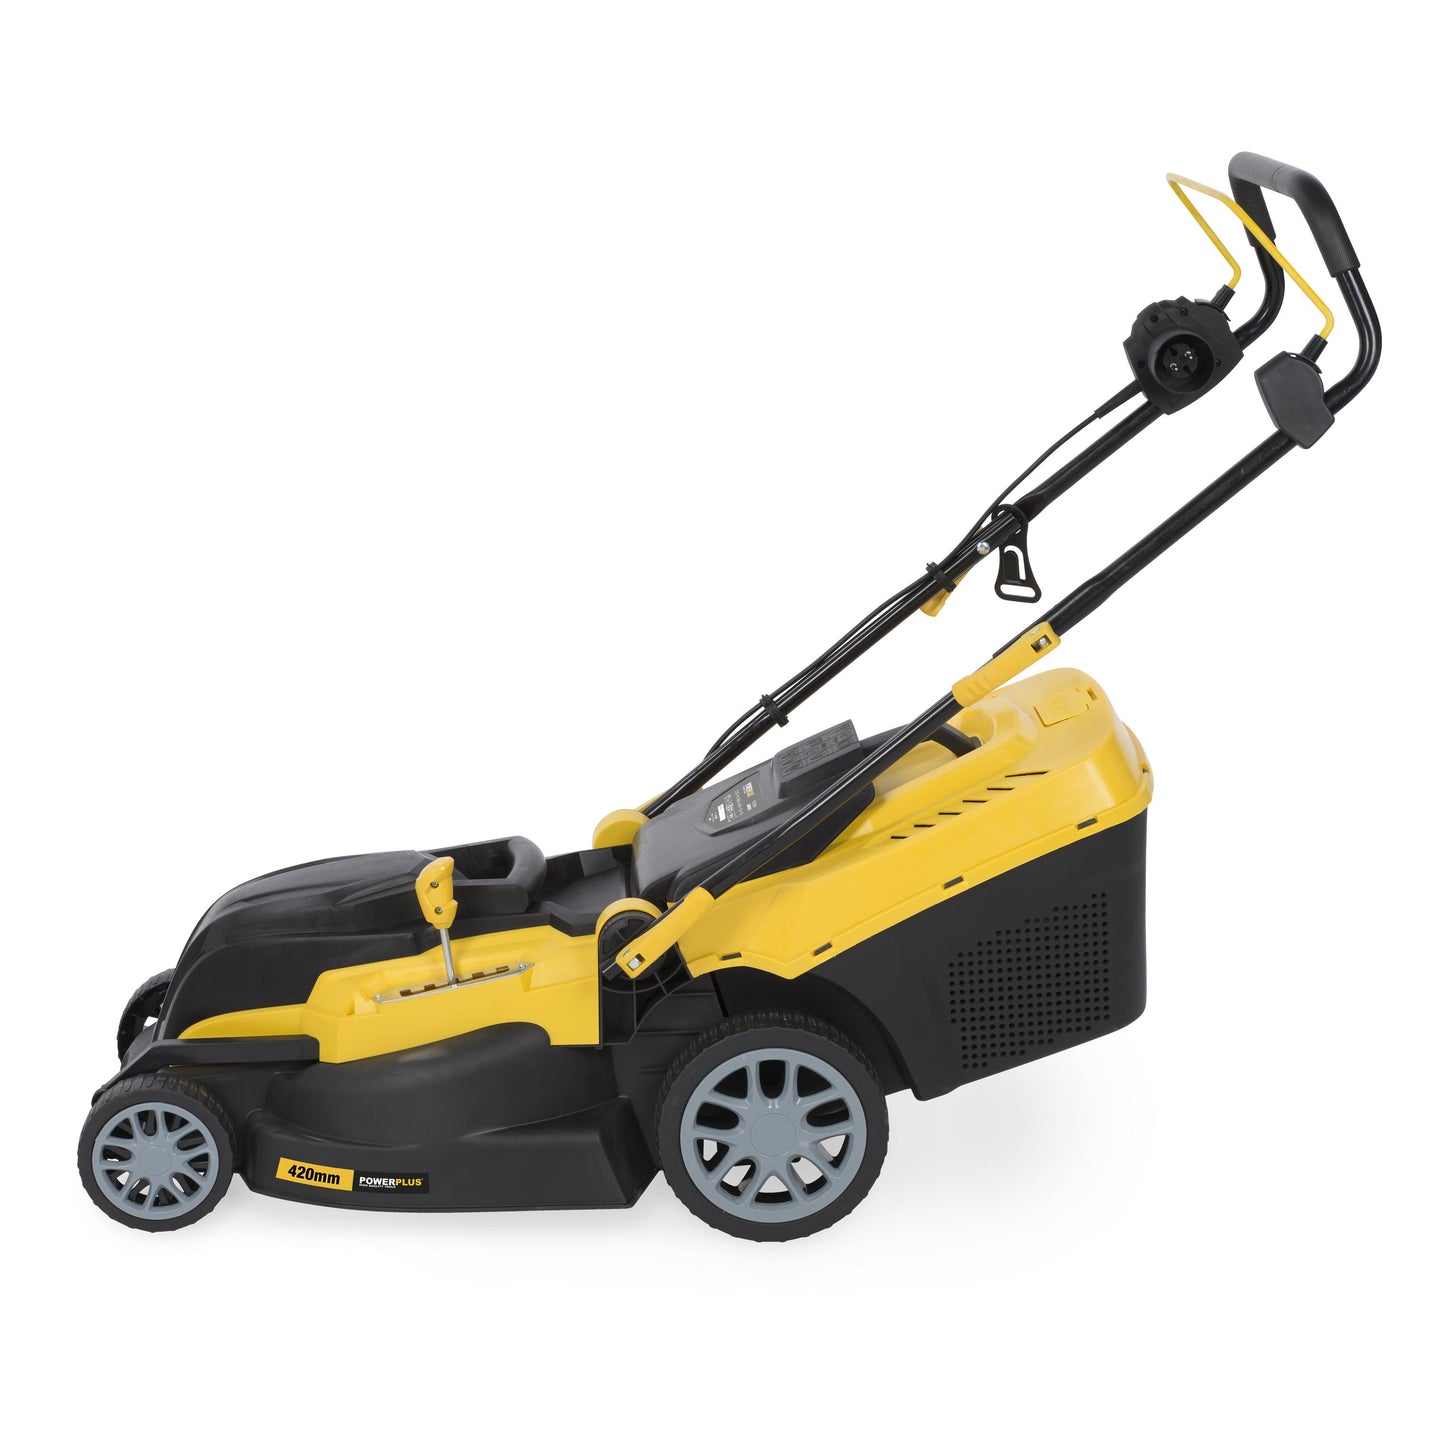 Power Plus - 2000w Lawnmower - Yellow